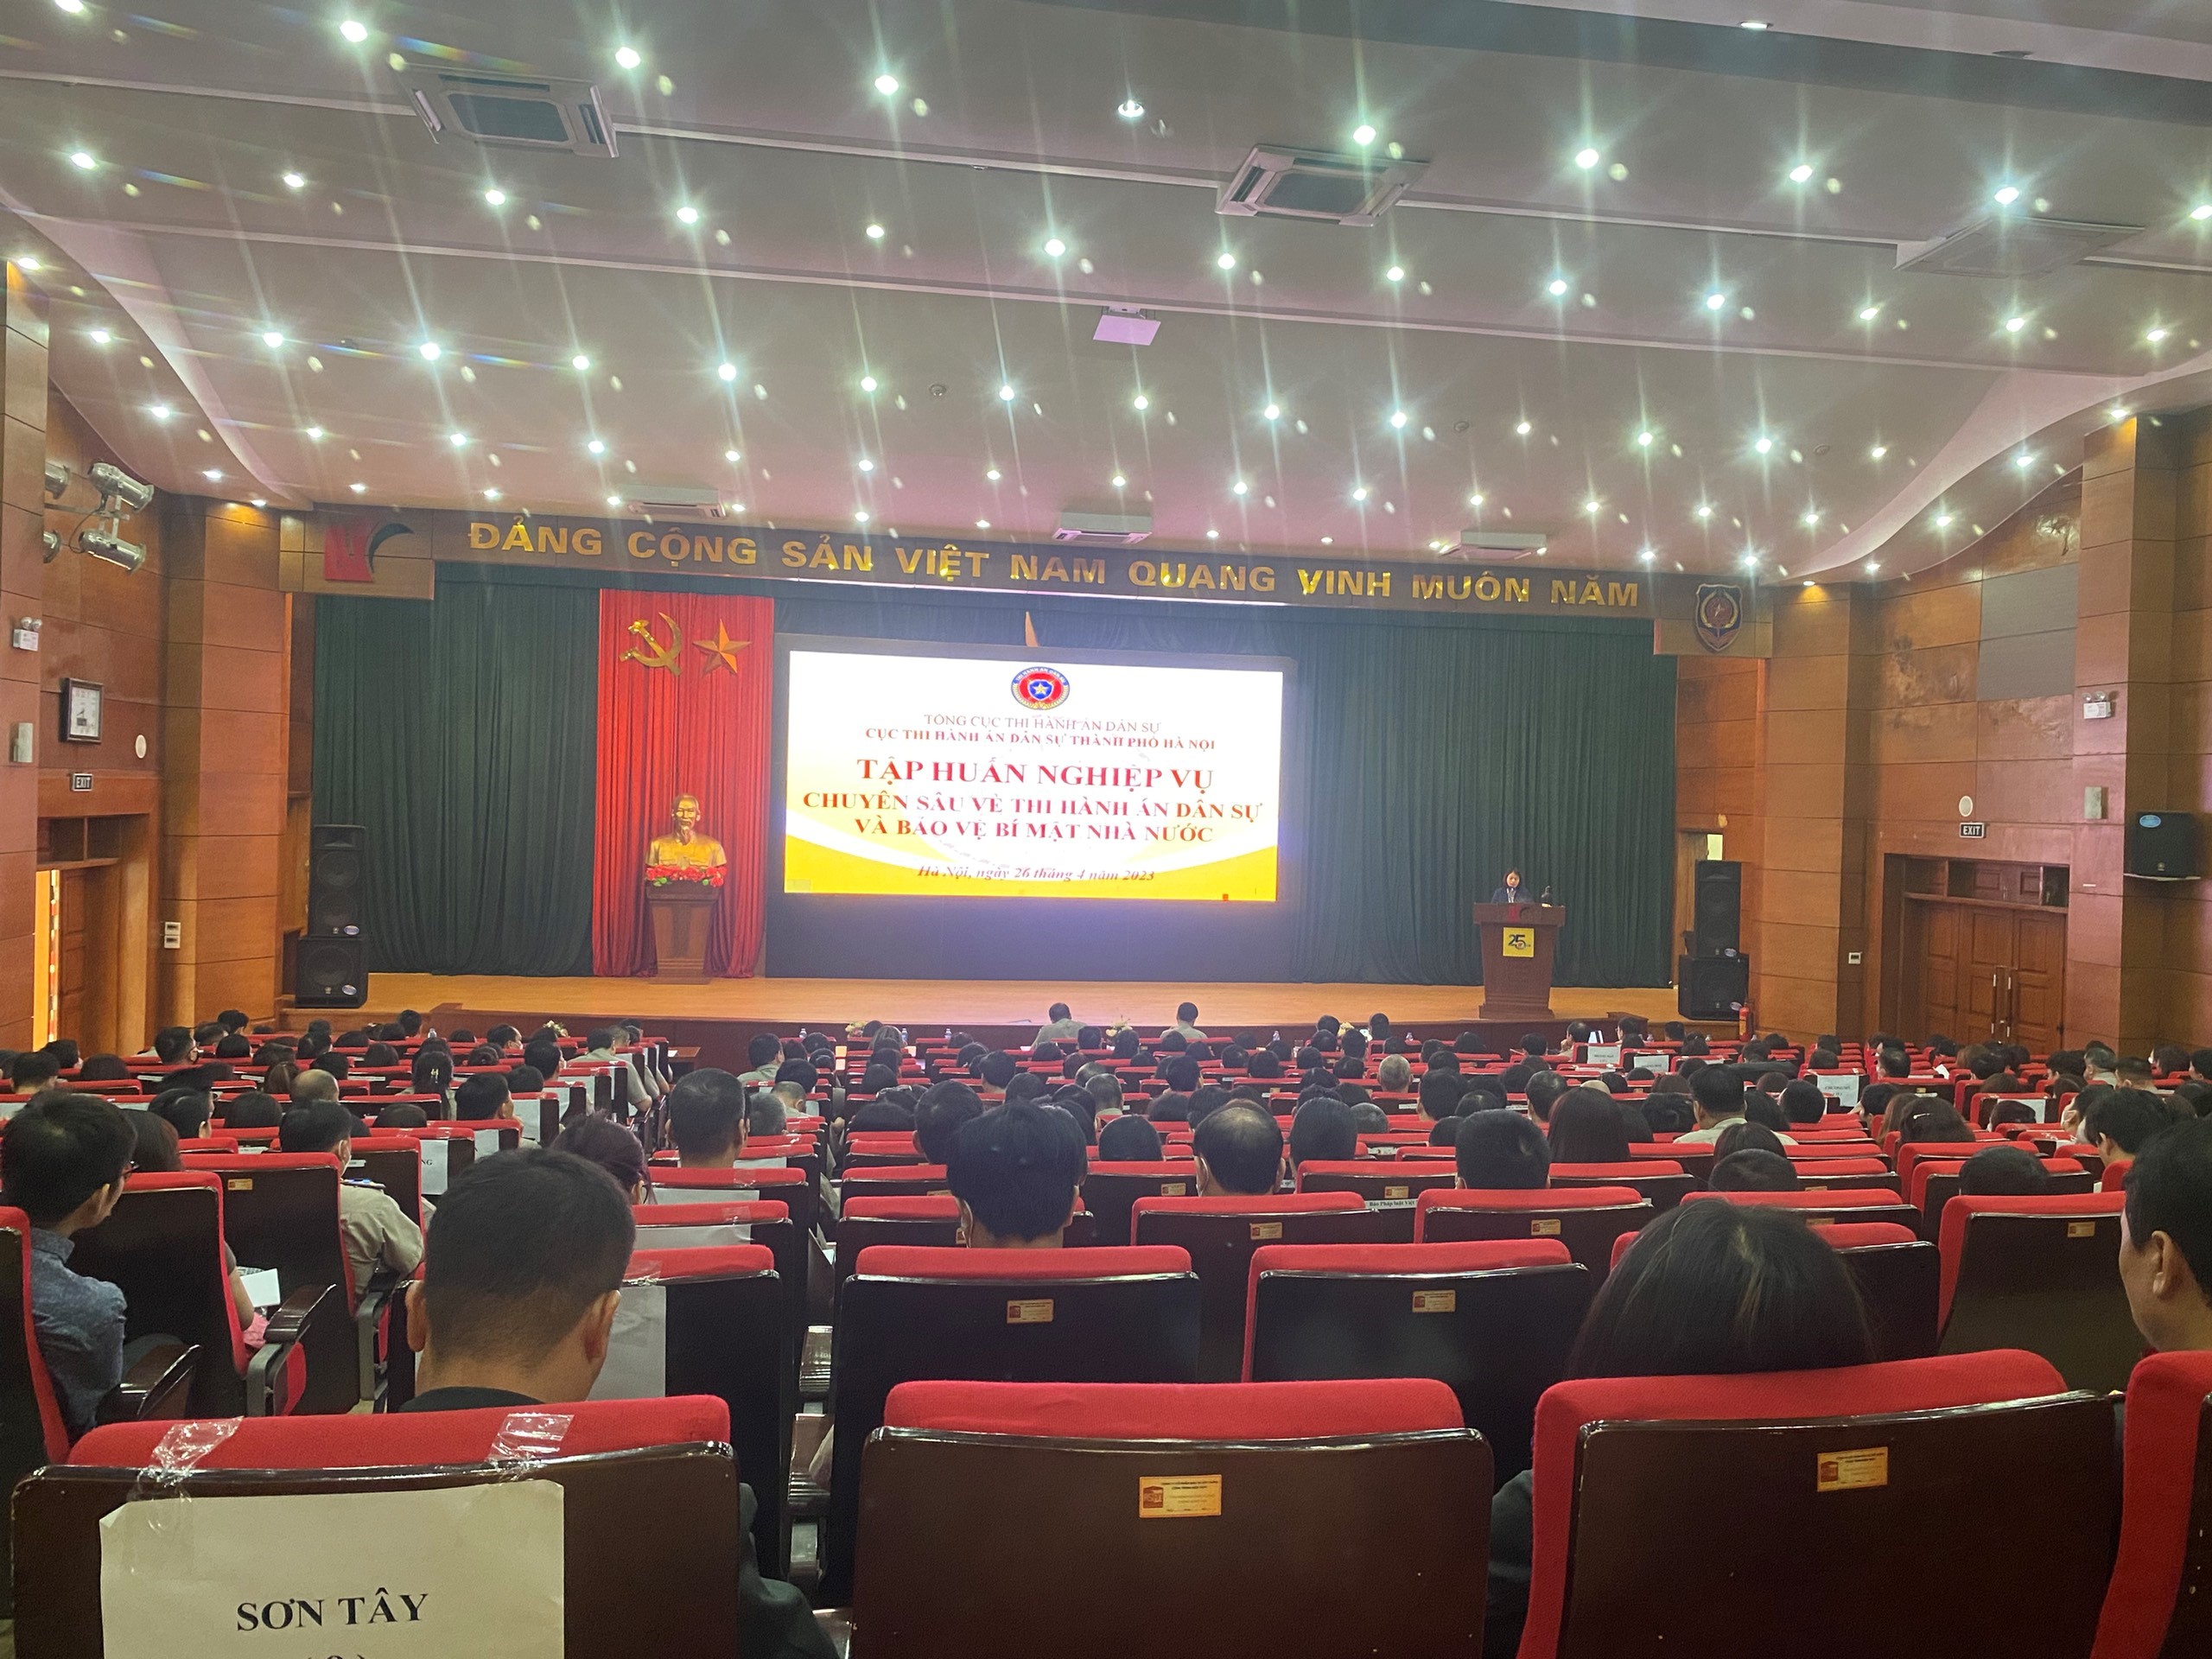 Cục THADS thành phố Hà Nội tổ chức Hội nghị tập huấn chuyên sâu về trình tự thủ tục thẩm định giá, bán đấu giá tài sản trong thi hành án dân sự và Bảo vệ bí mật nhà nước